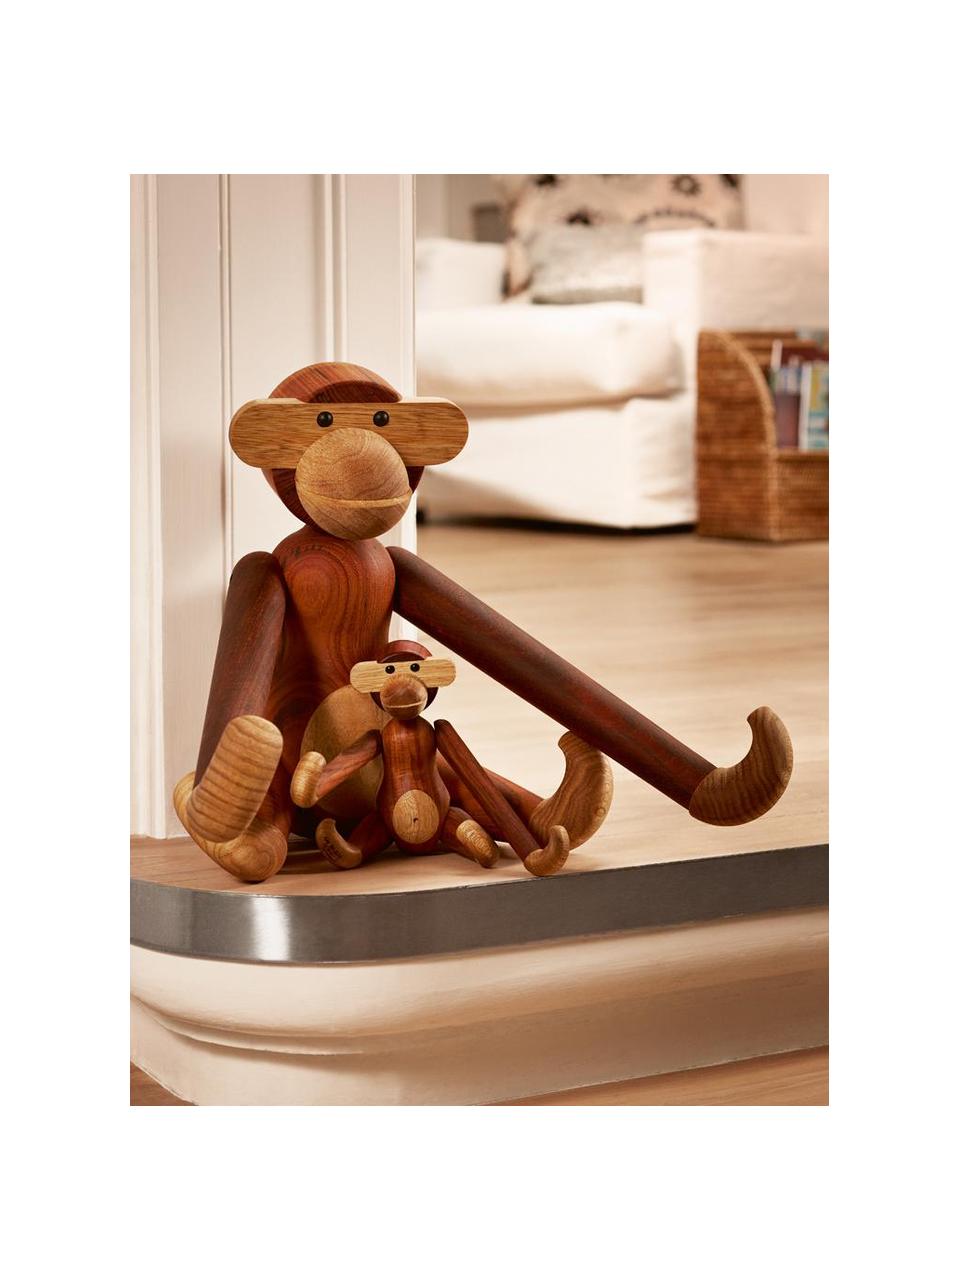 Designer-Deko-Objekt Monkey aus Teakholz, H 19 cm, Teakholz, Limbaholz, lackiert, FSC-zertifiziert, Teakholz, B 20 x H 19 cm